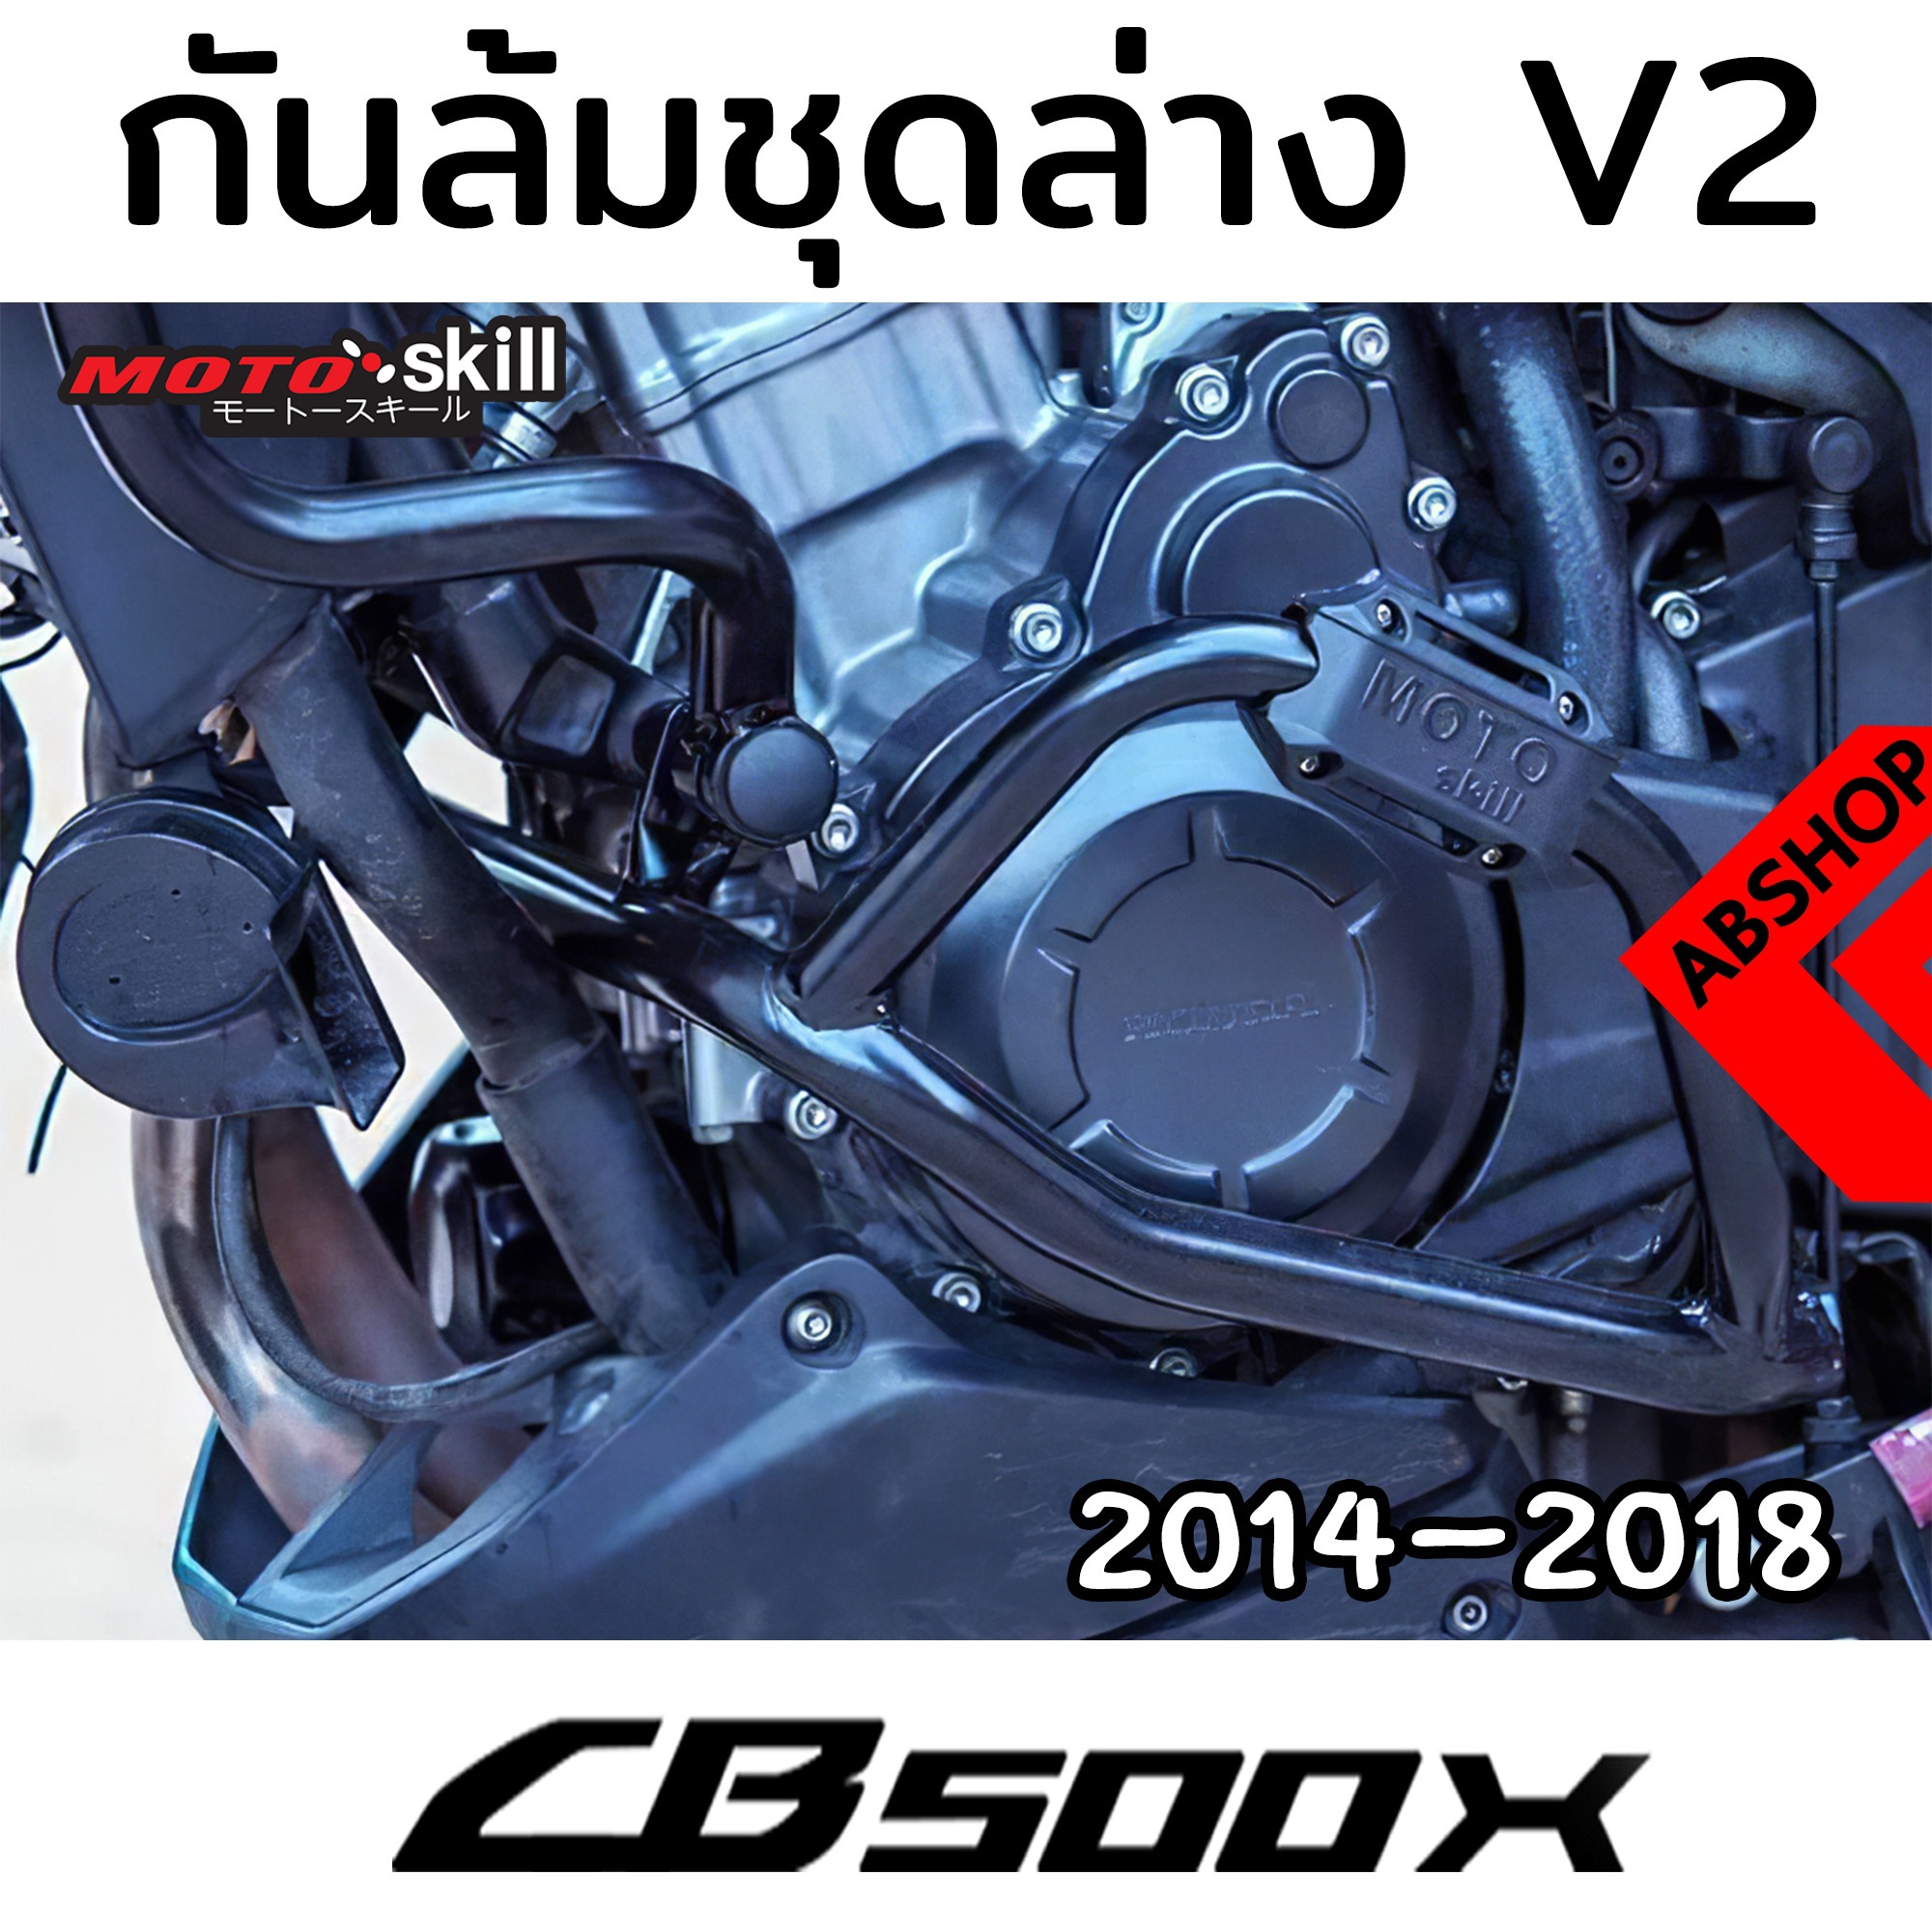 (พรีออเดอร์ 7-14 วัน) กันล้ม V.2 ชุดล่าง แคชบาร์ การ์ดเครื่อง สีดำ/สีเงิน/สีแดง Crashbar HONDA CB500X ปี 2014-2018 By ABSHOP